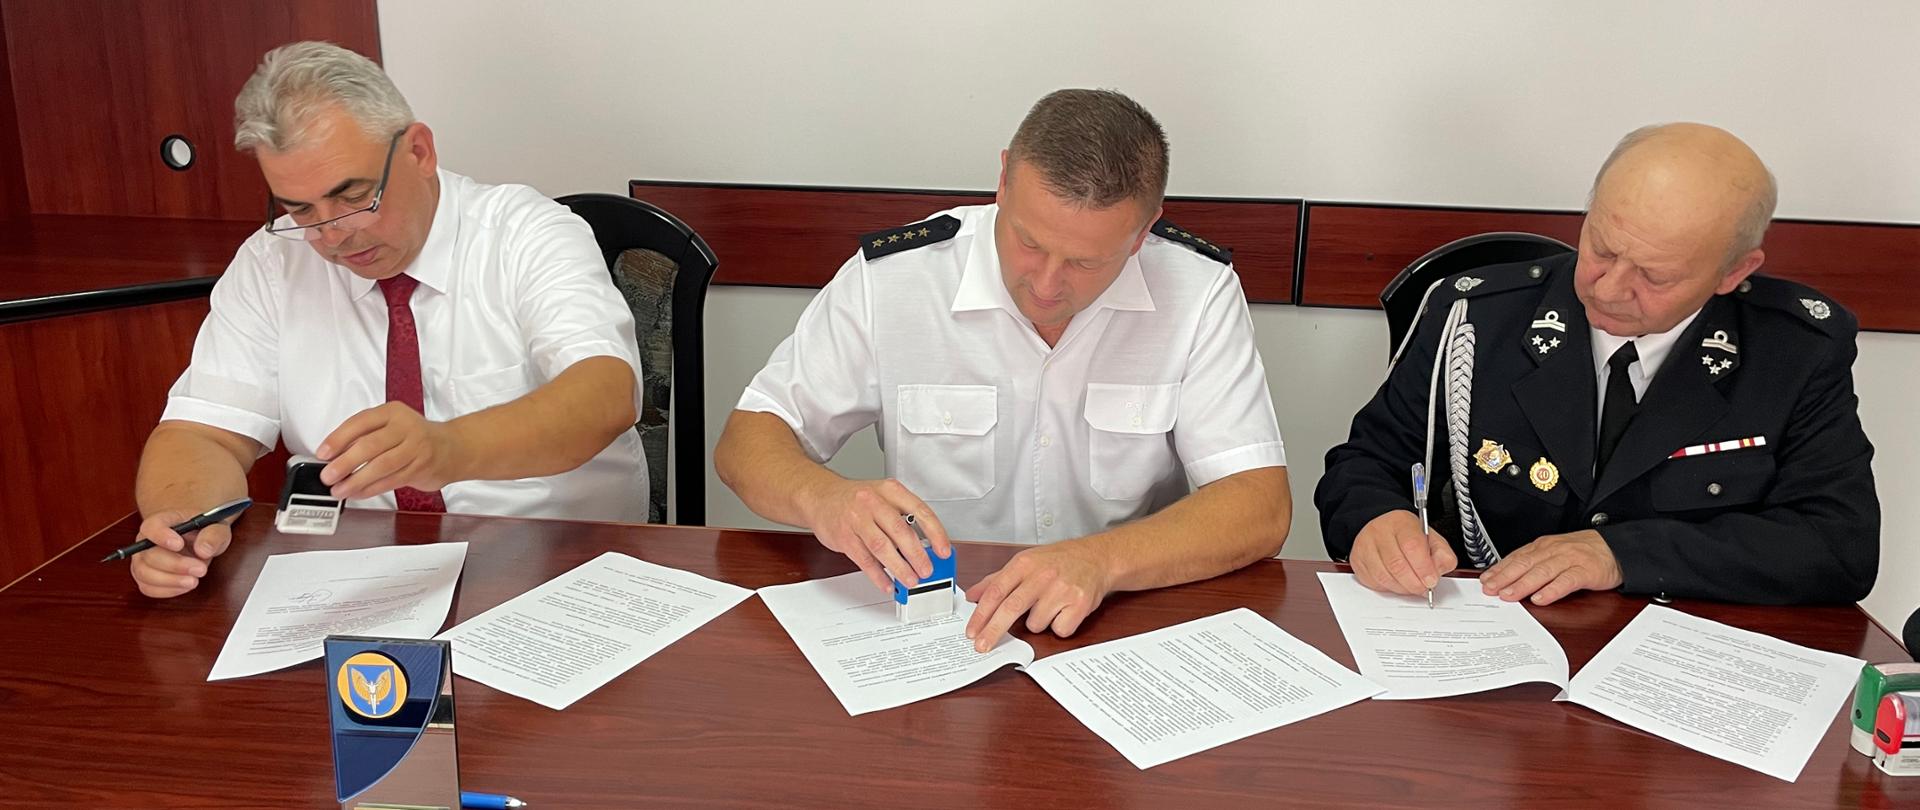 Na zdjęciu przedstawiciele instytucji podpisują przy biurku porozumienie